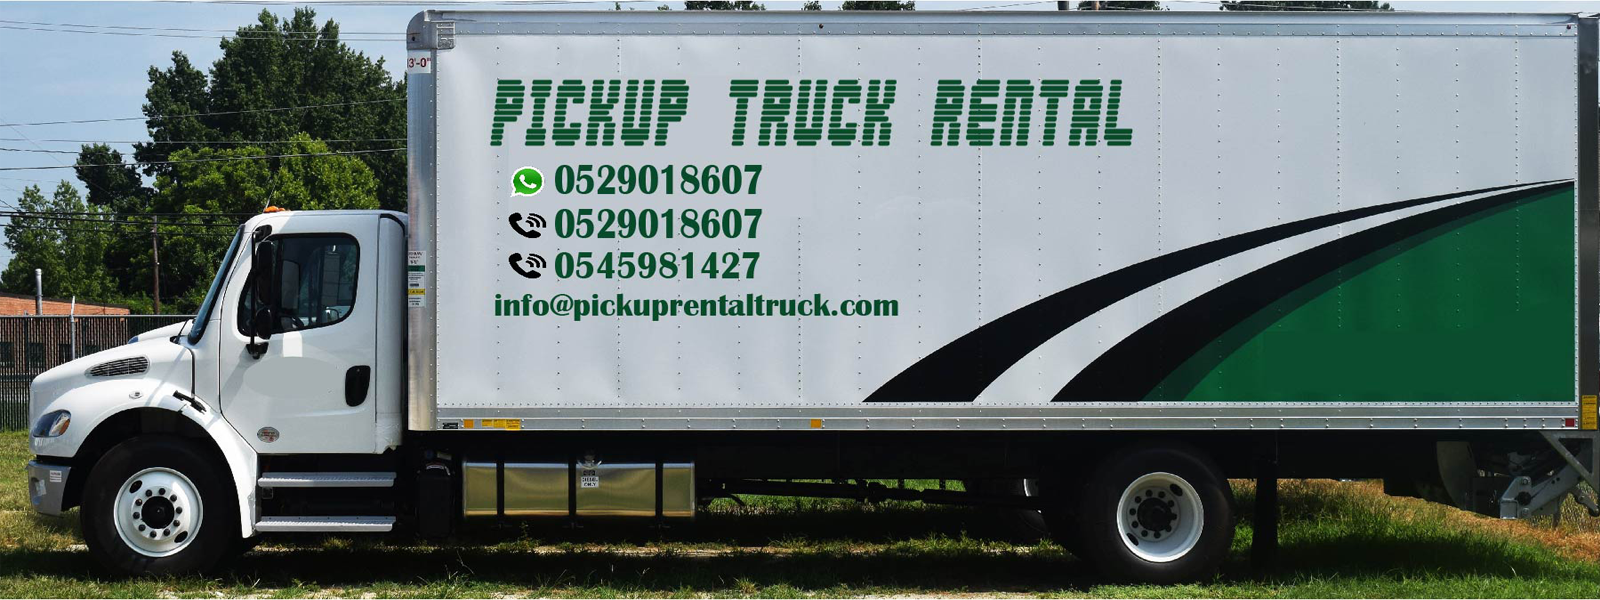 Welcome to Pickup Truck Rental UAE